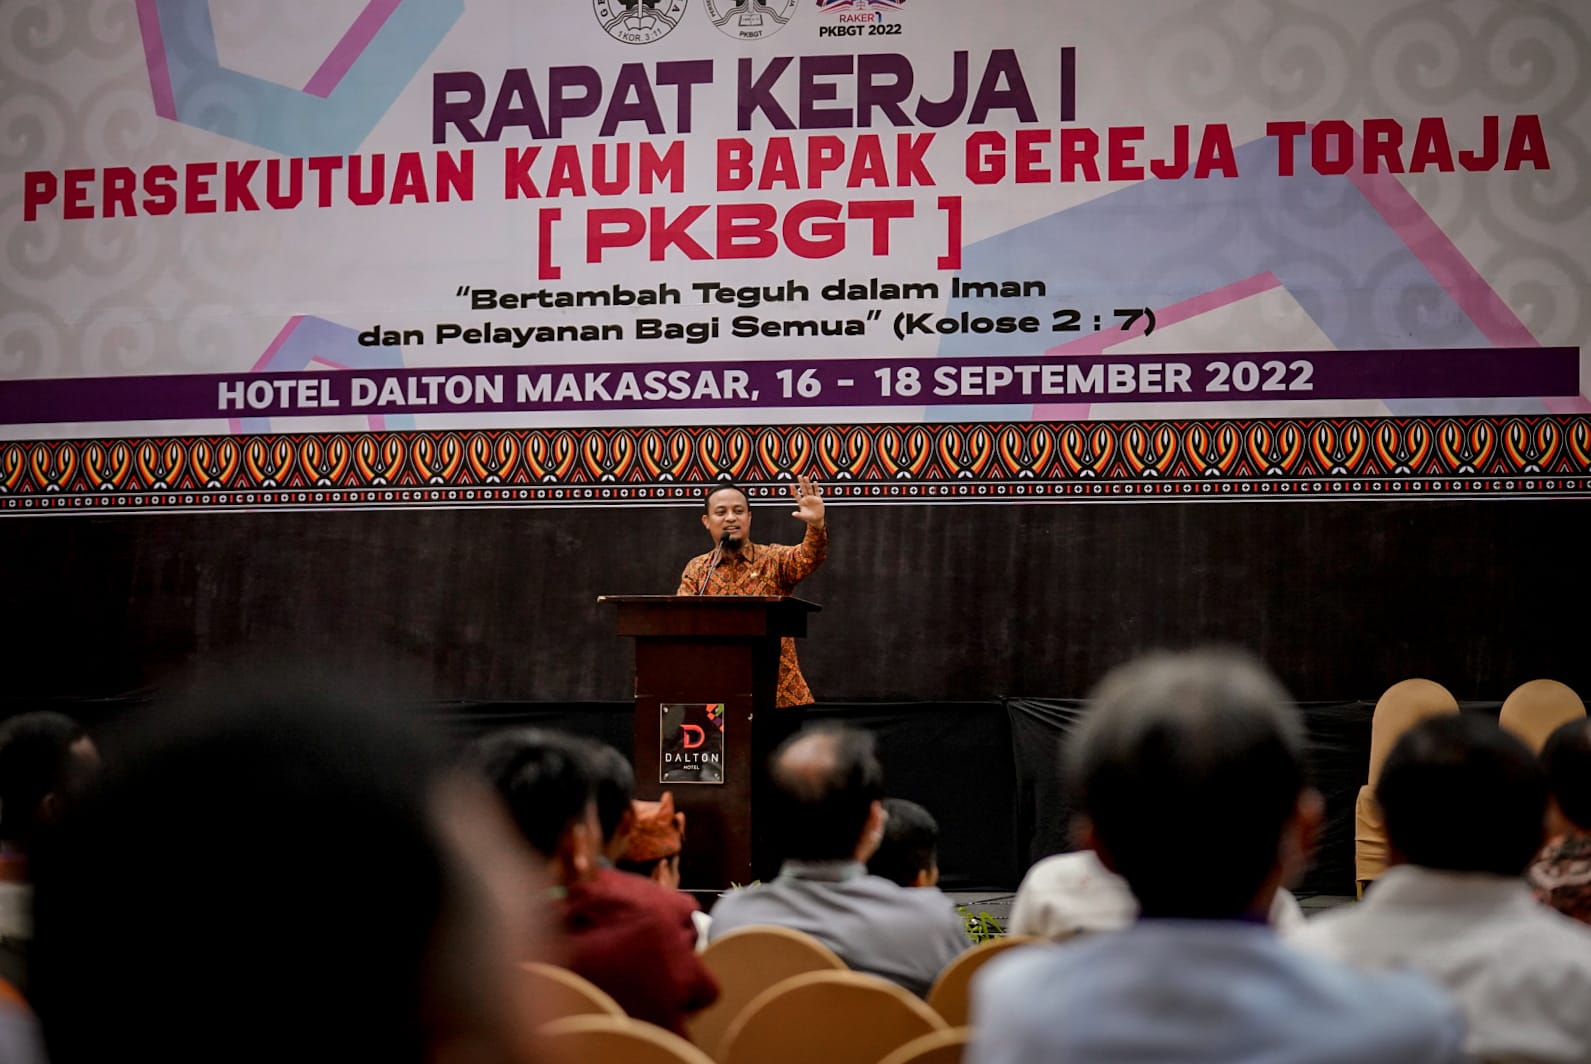 Gubernur Sulawesi Selatan, Andi Sudirman Sulaiman membuka acara Rapat Kerja I Persekutuan Kaum Bapak Gereja Toraja (PKBGT) di Hotel Dalton, Makassar